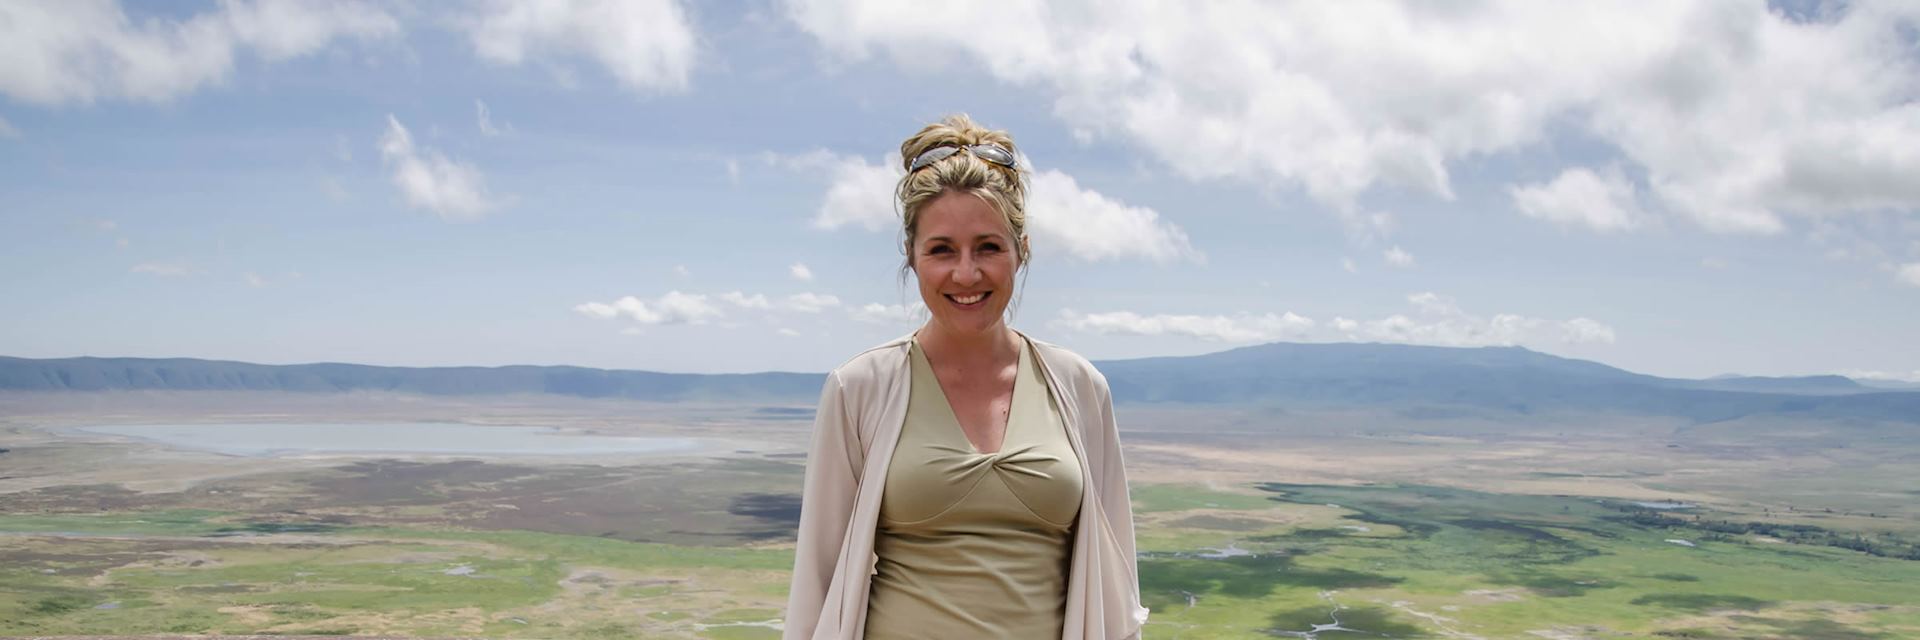 Arista at the Ngorongoro Crater, Tanzania